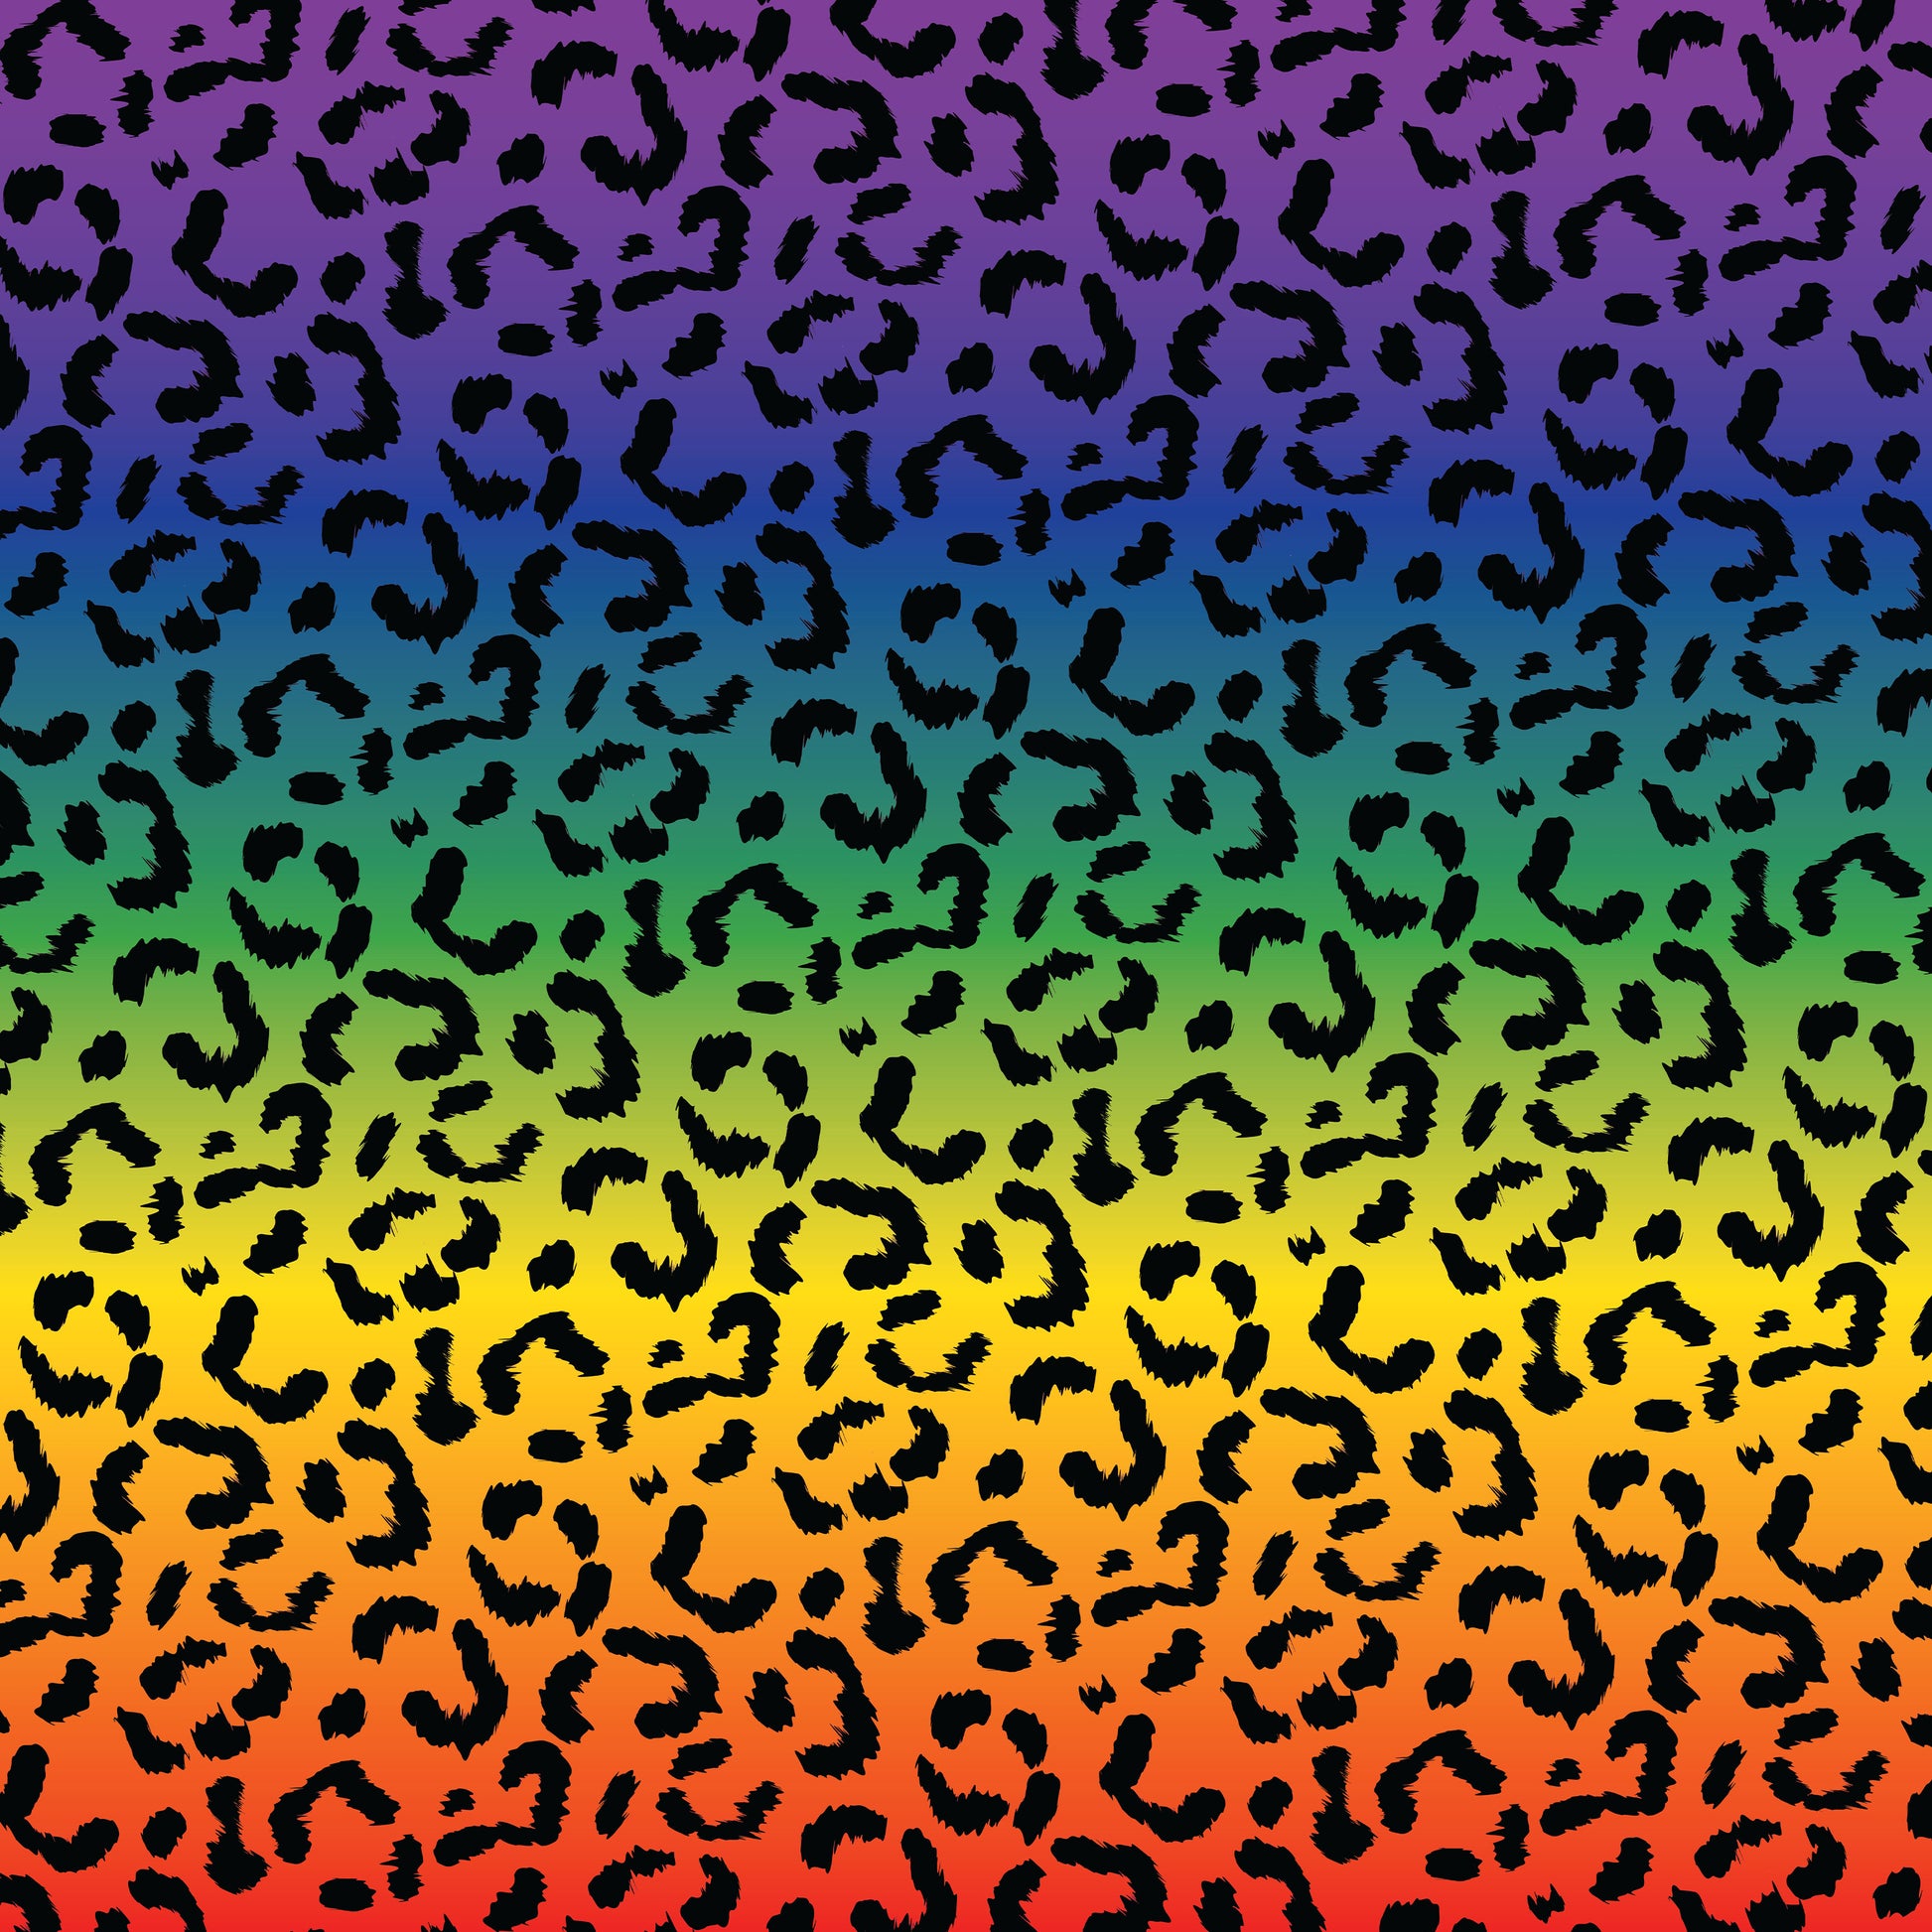 LGBTQ Leopard Pride pattern wrapping